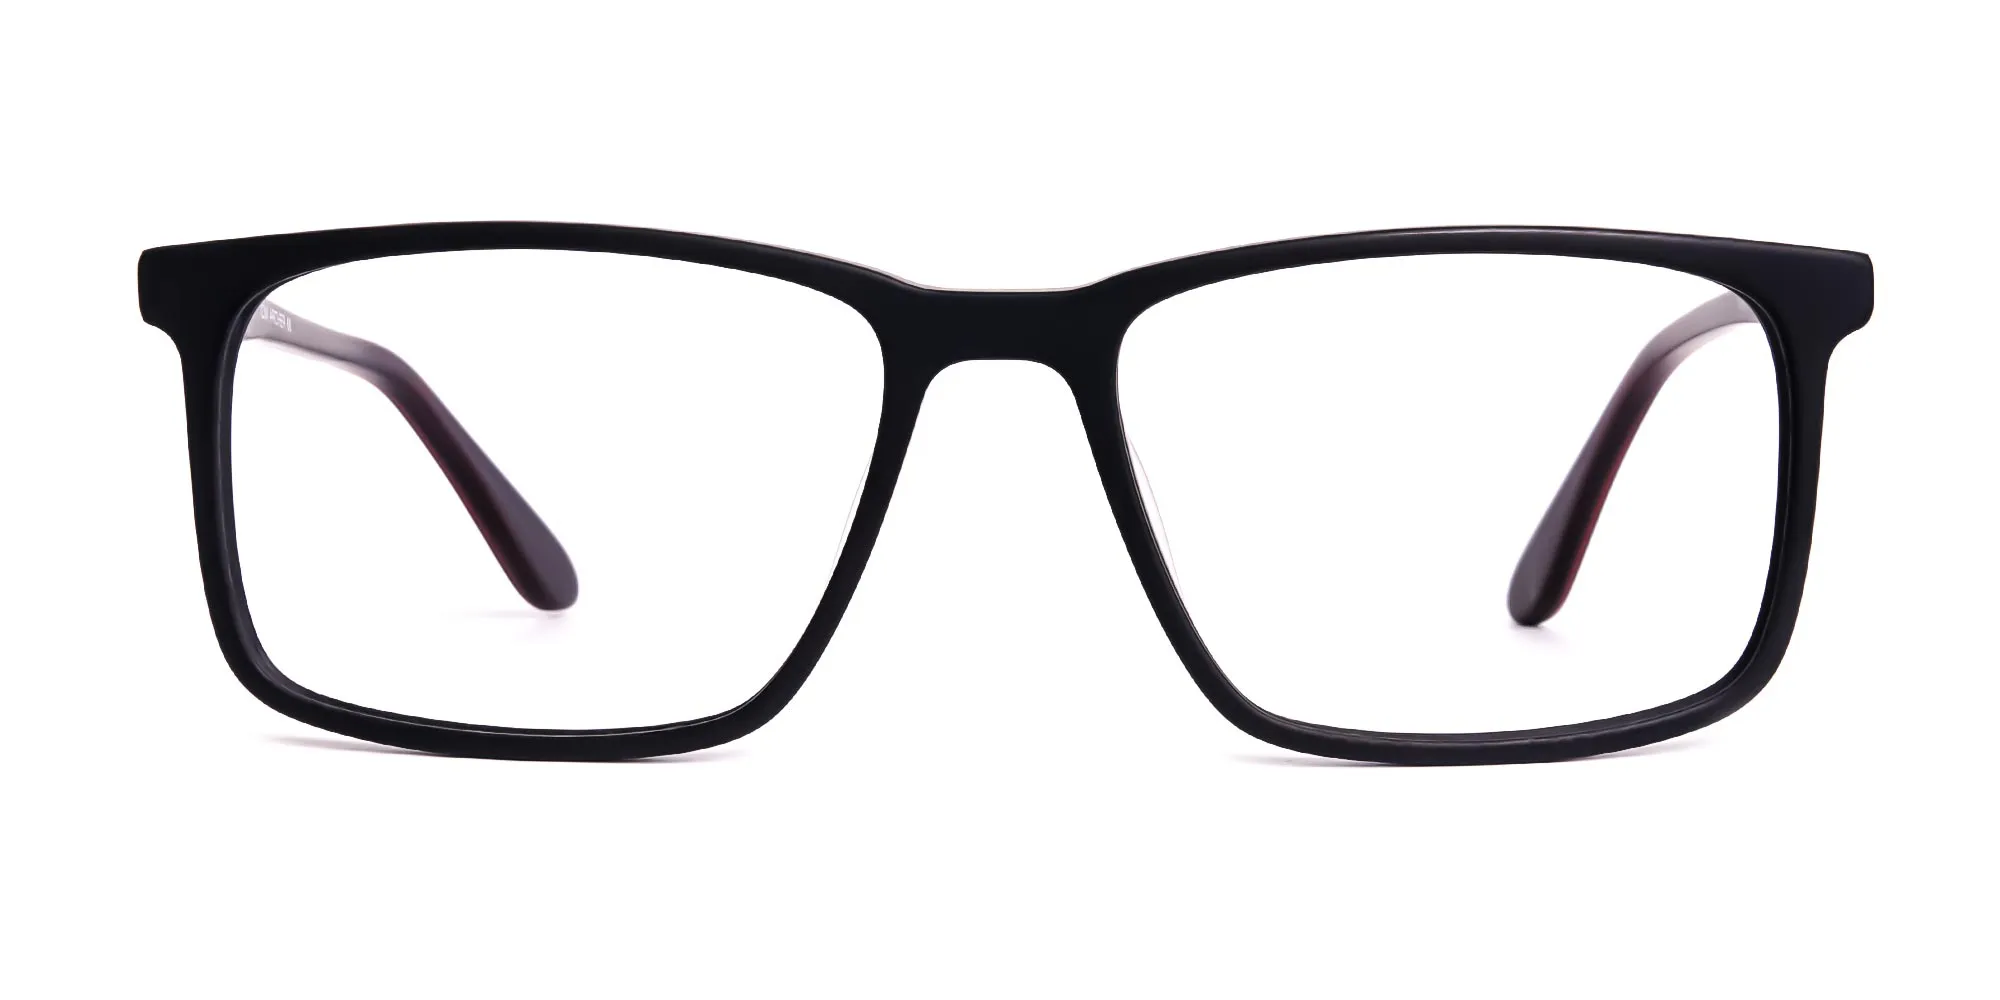 classic matte black full rim rectangular glasses frames-2